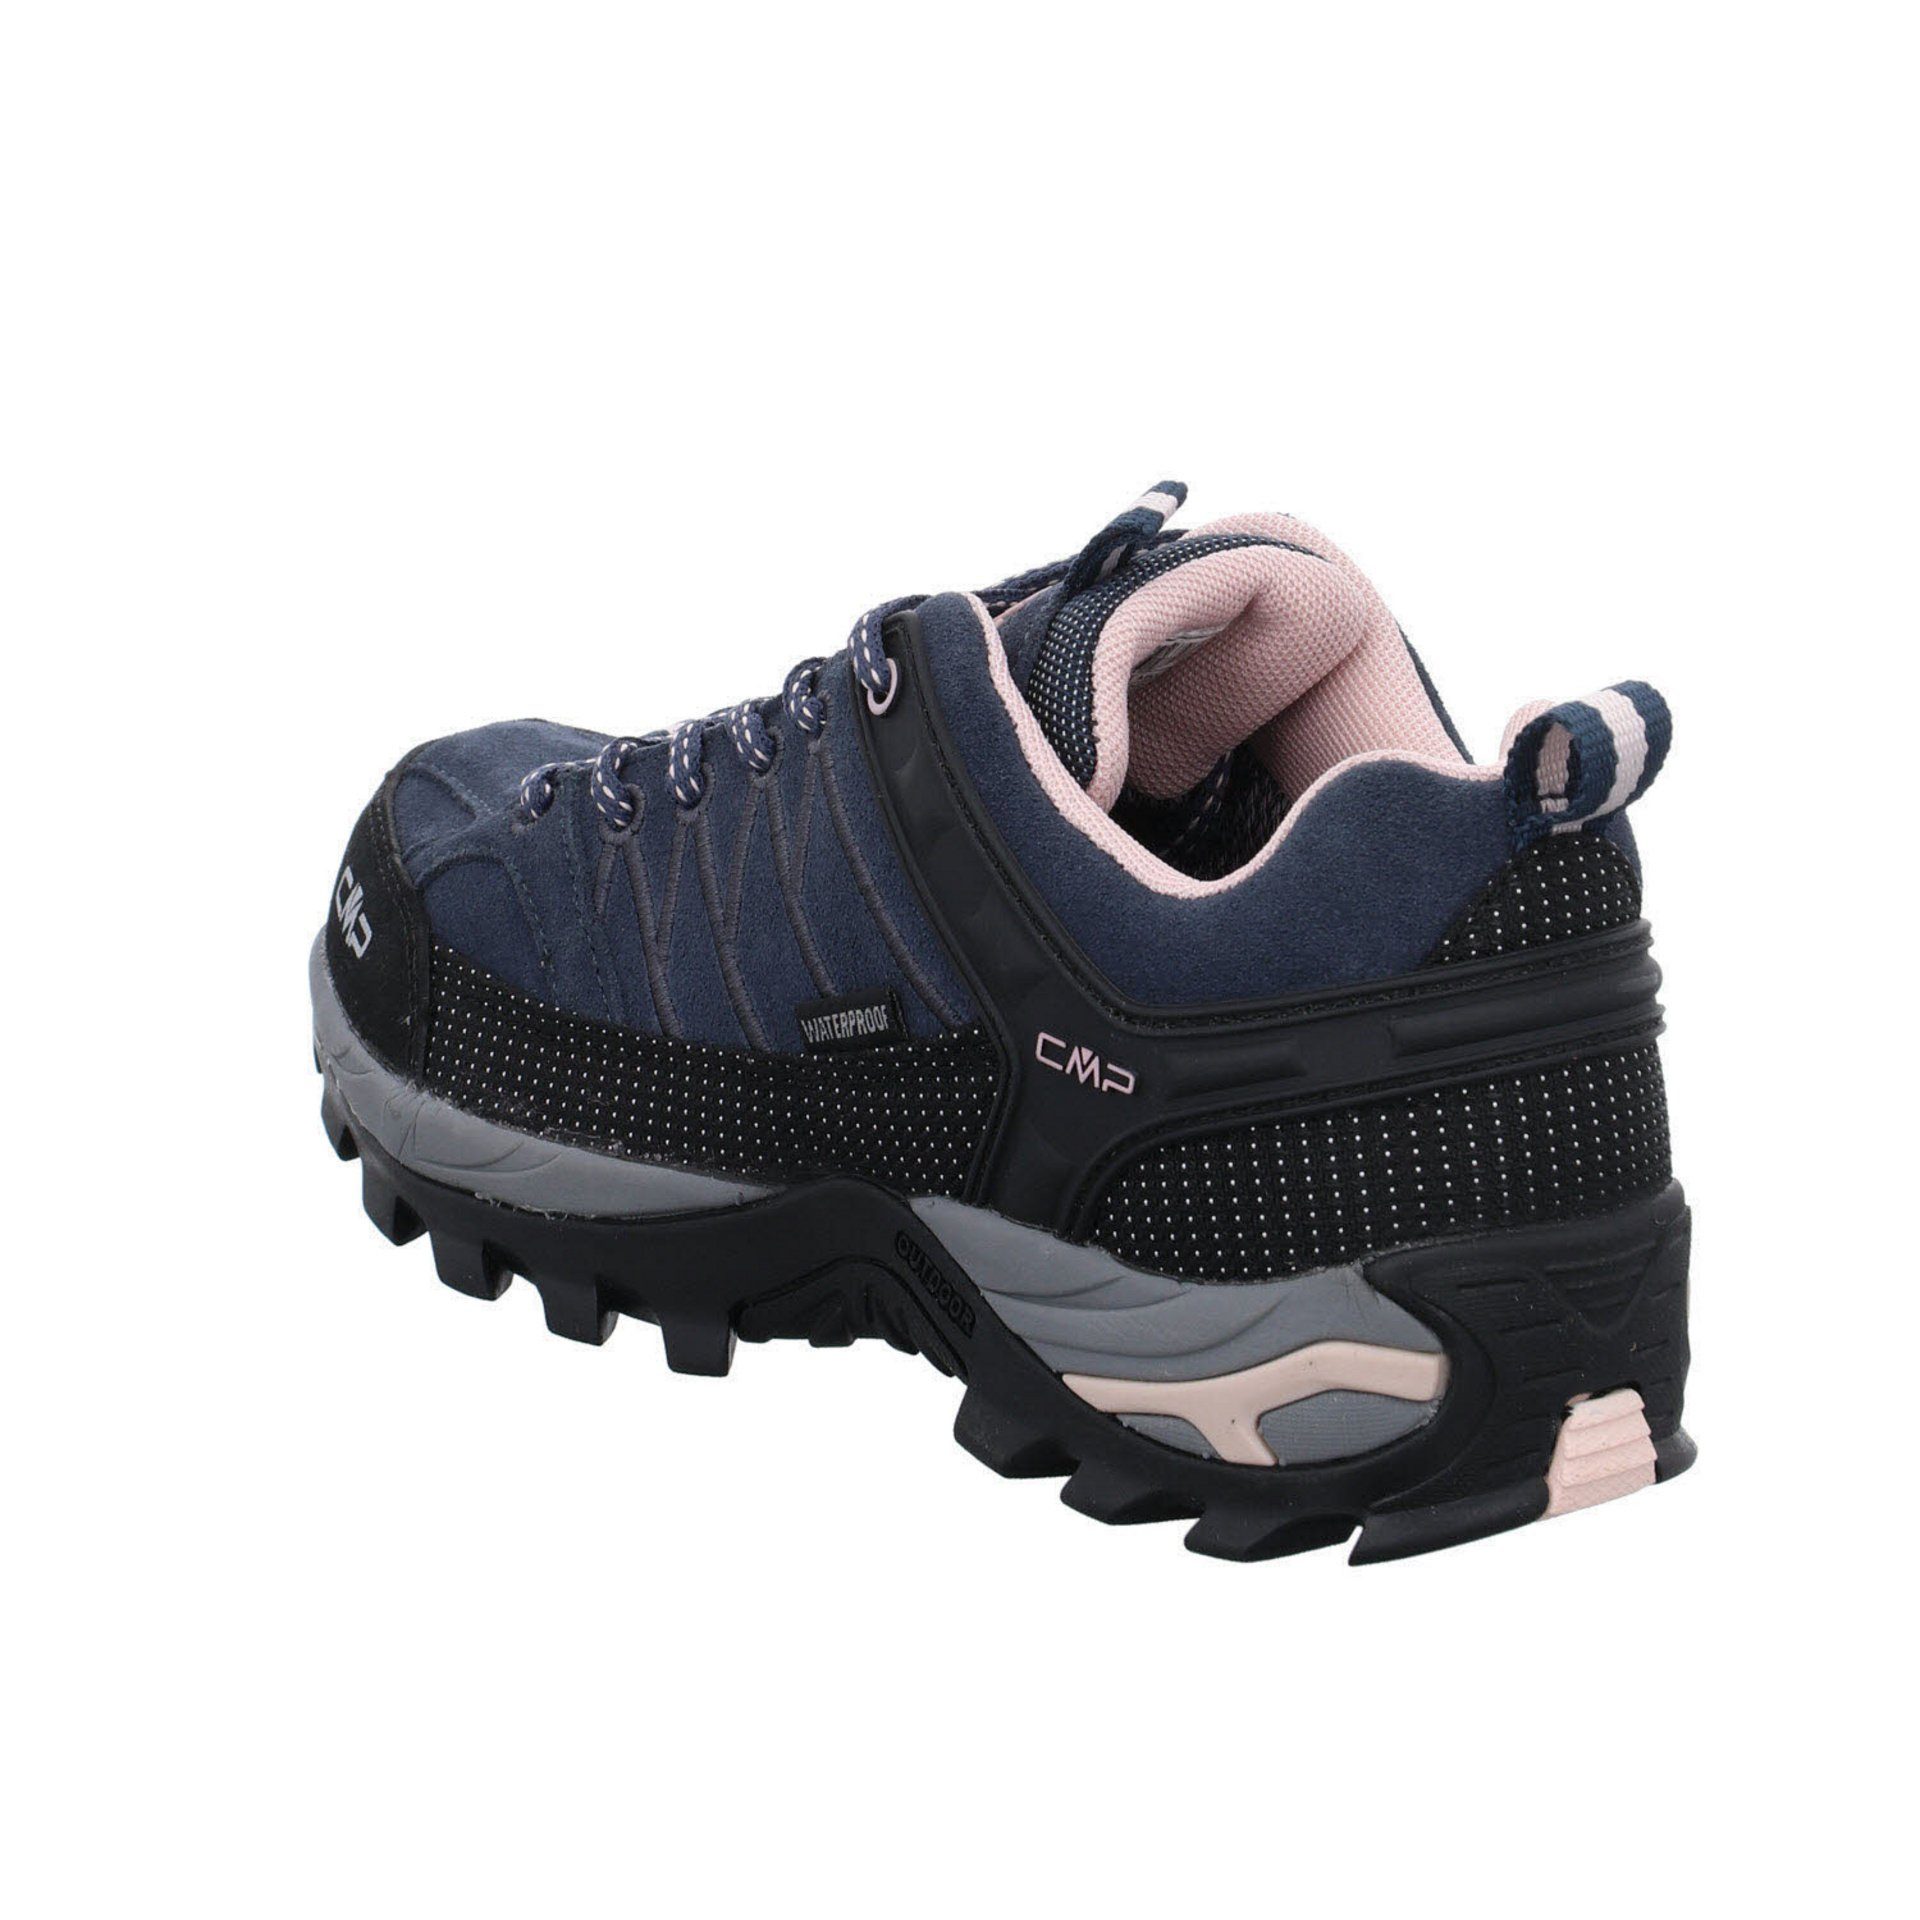 Schuhe CMP Outdoorschuh Riegel Outdoorschuh Outdoor Low Leder-/Textilkombination (201) Damen anthrazit